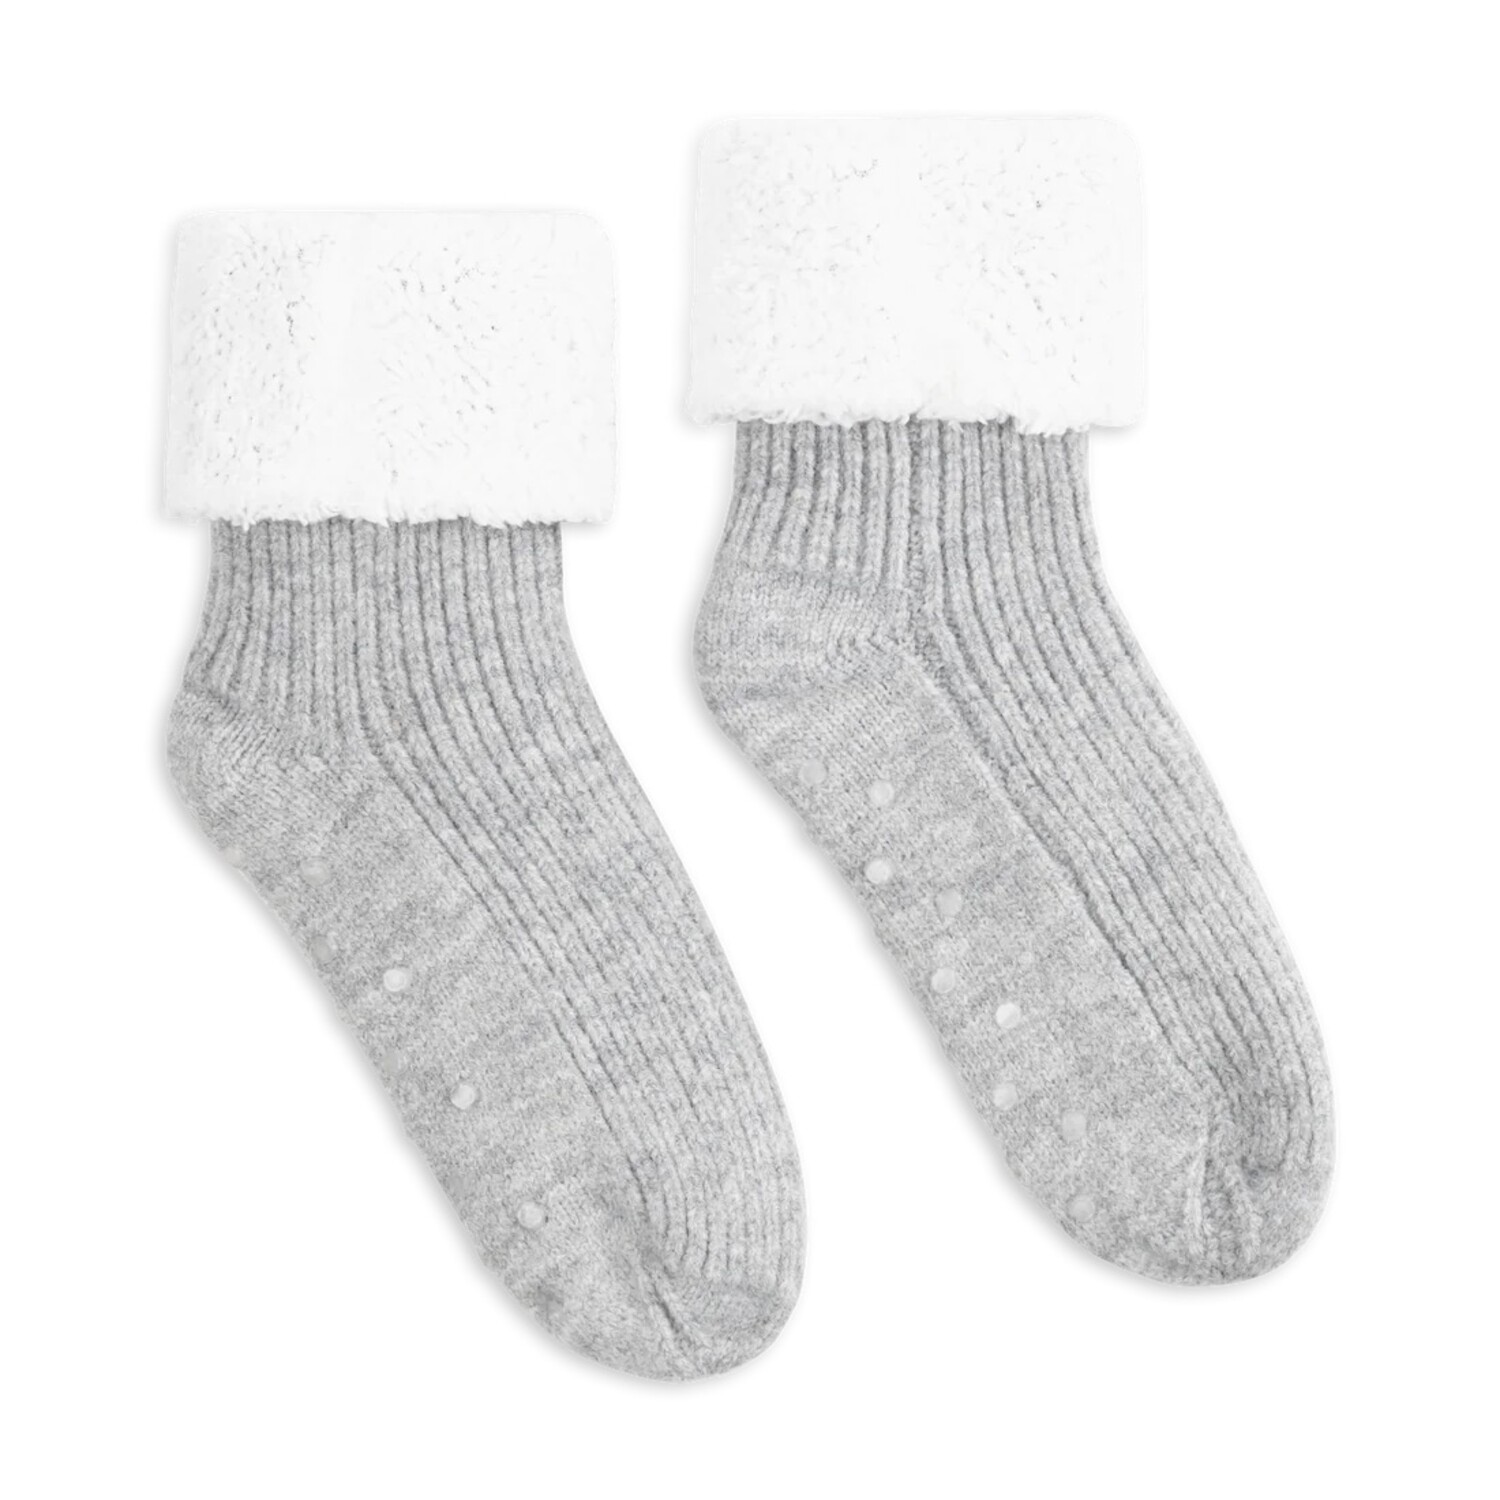 LEMON LOUNGEWEAR Slipper Socks  Dan Joyce Clothing - Dan Joyce Clothing